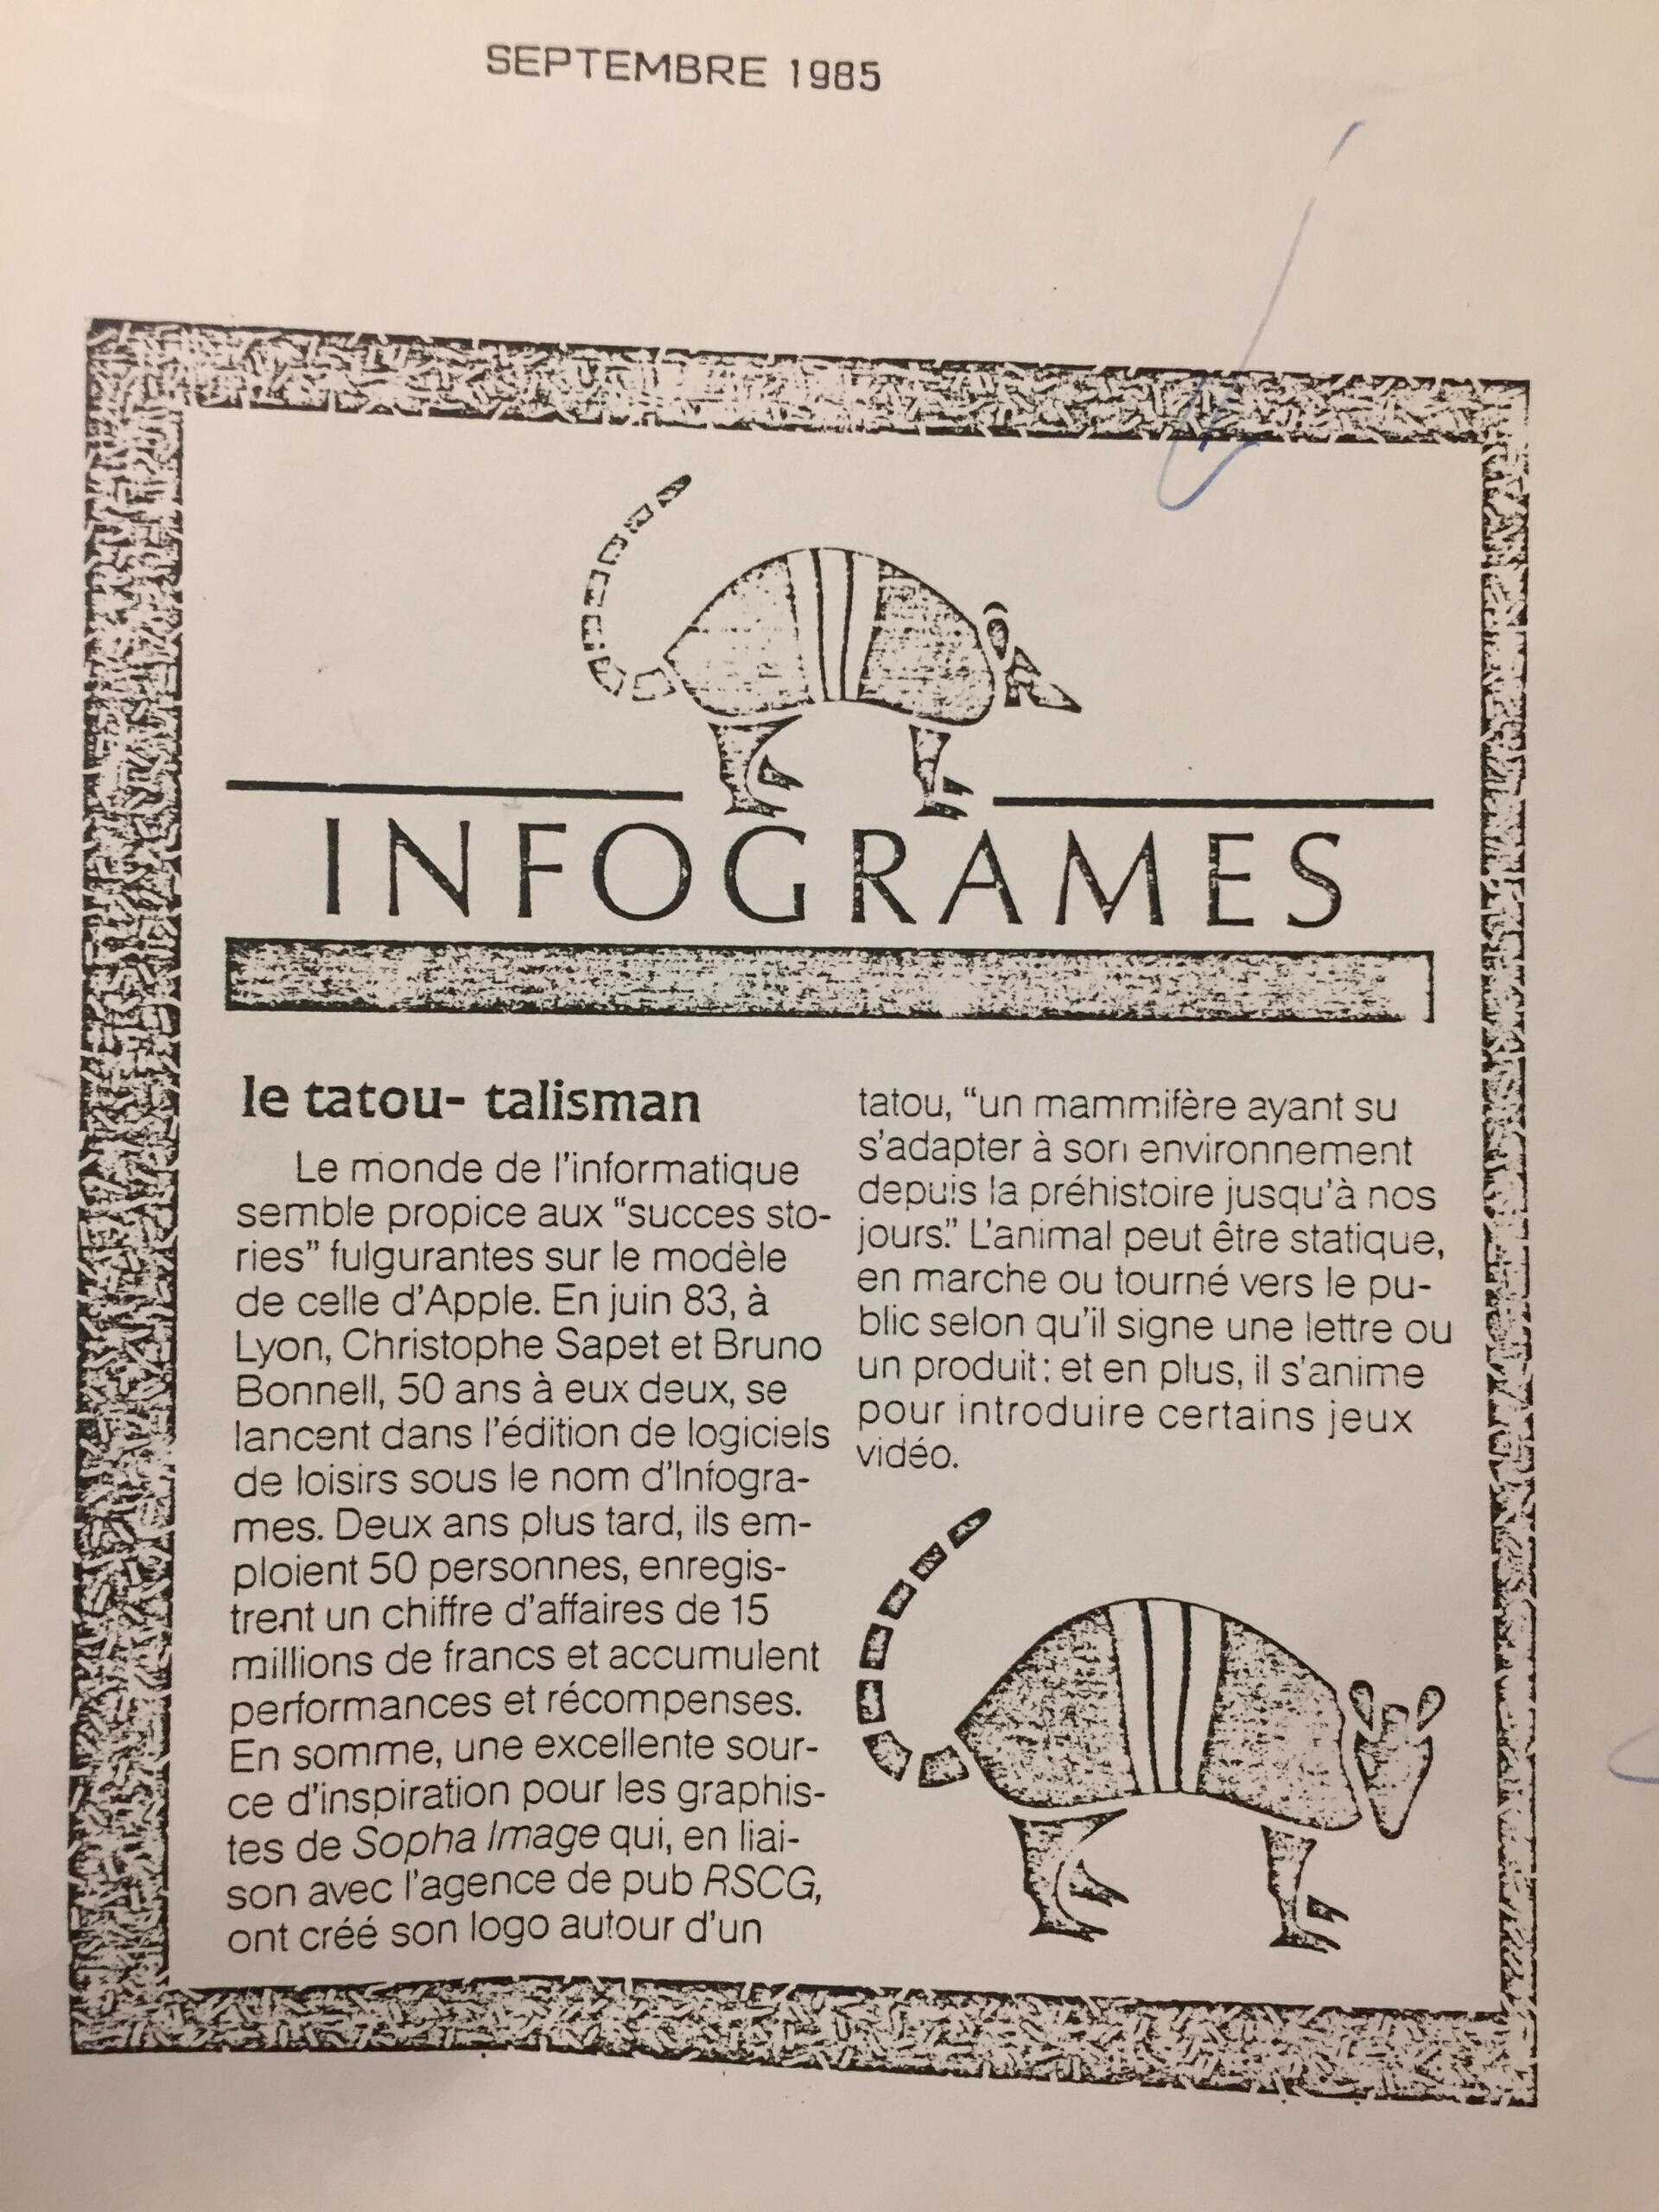 Ce document fournit des explications sur les origines du tatou comme logo d’Infogrames.